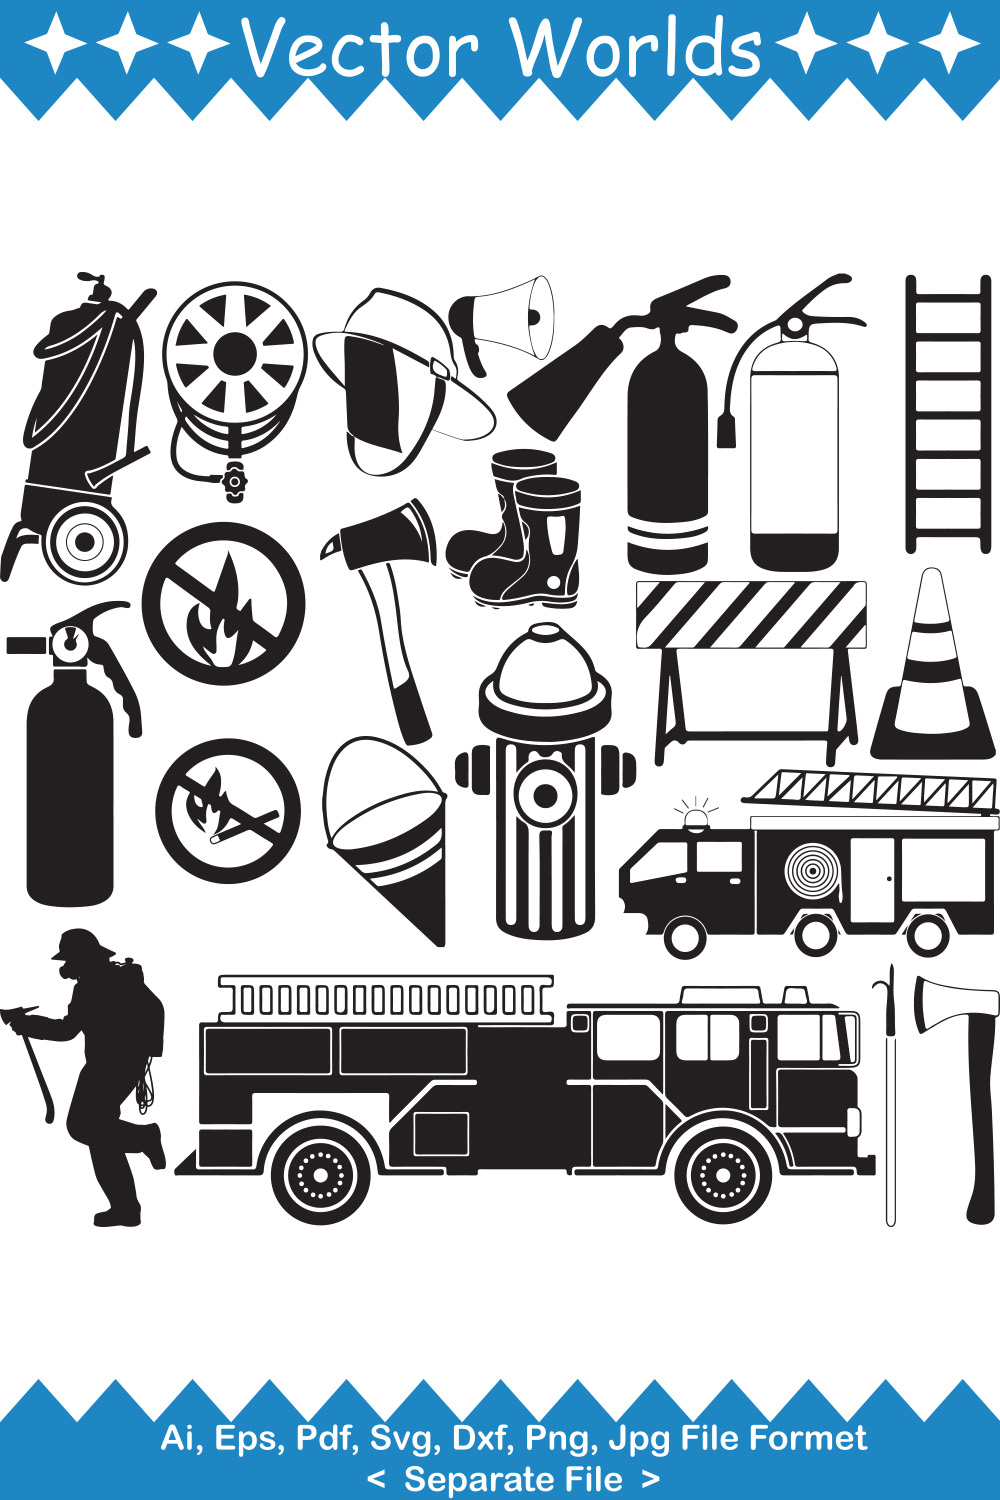 Firefighter Equipment SVG Vector Design pinterest image.